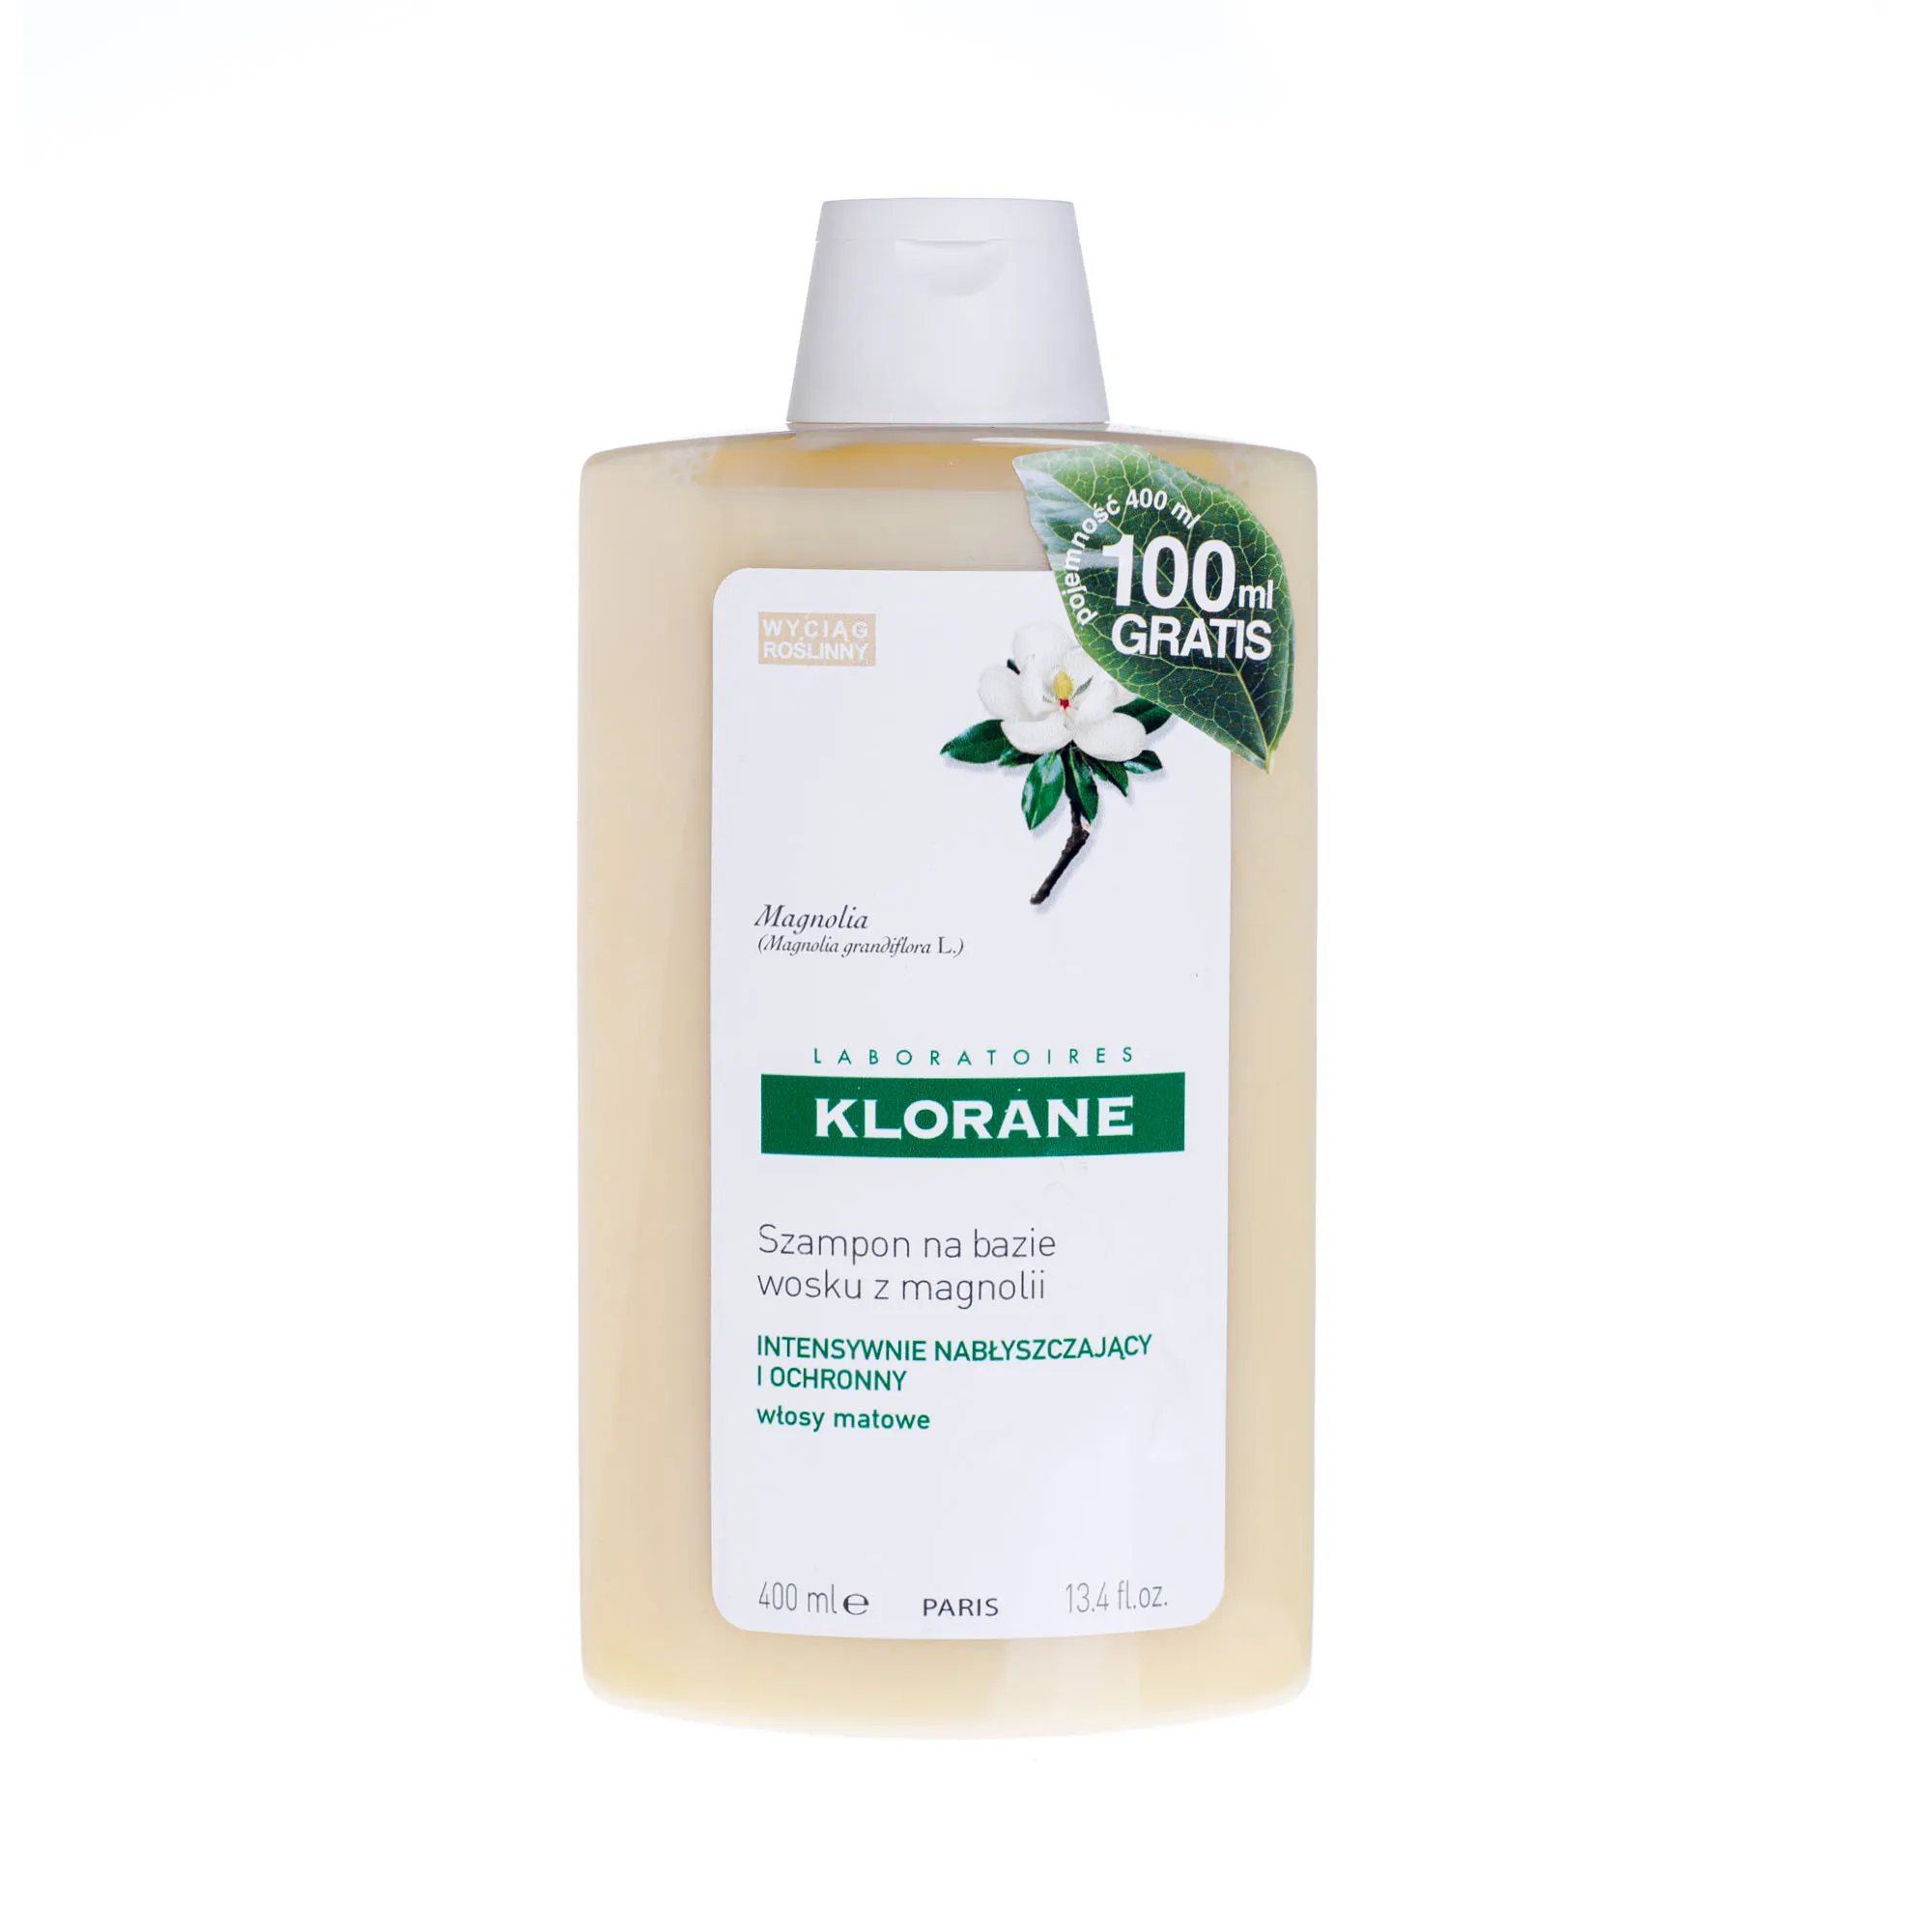 Klorane szampon na bazie wosku z magnolii, 400 ml 